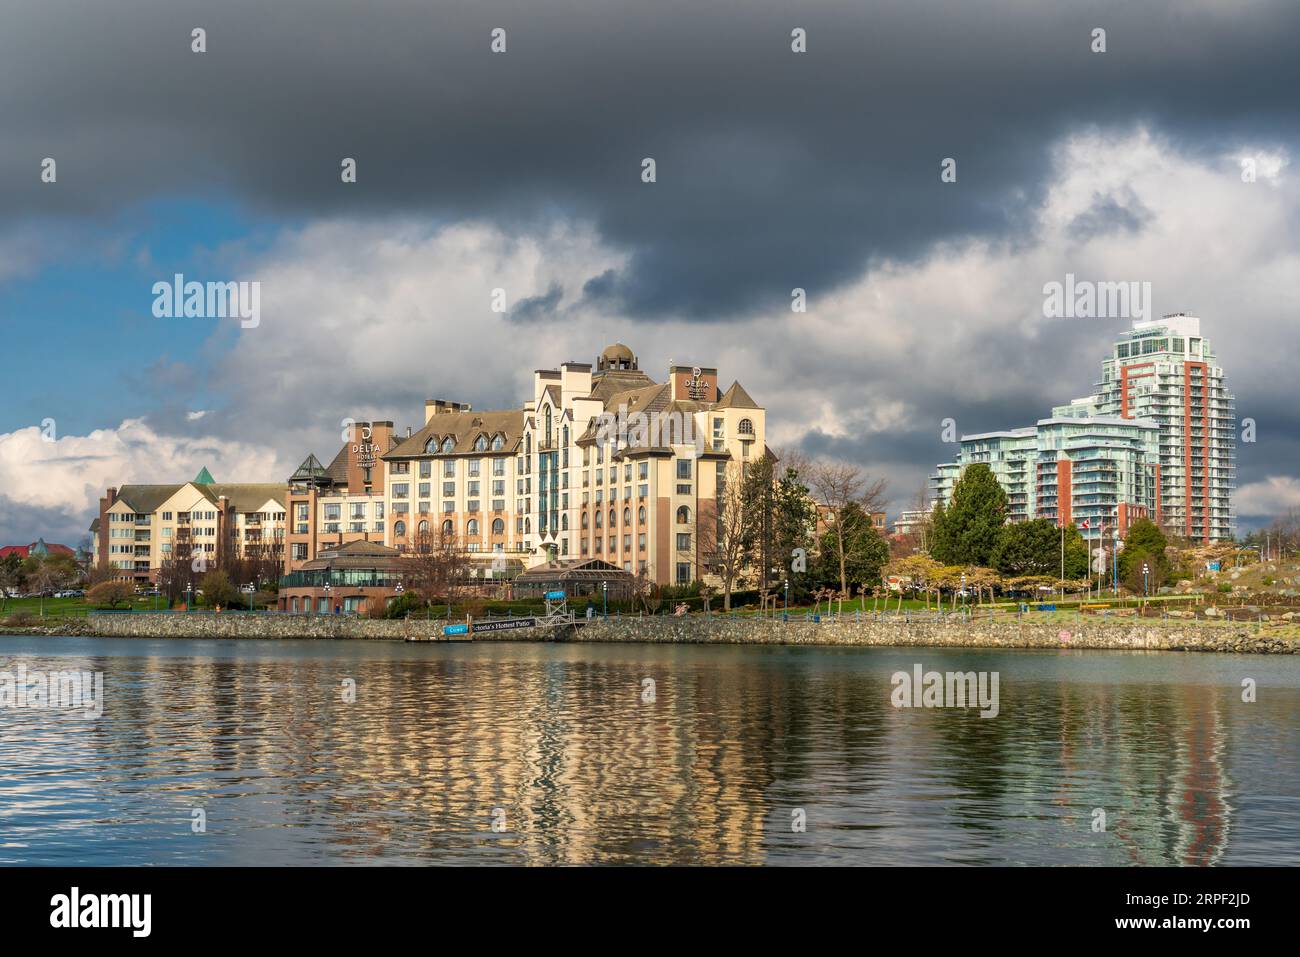 Das Delta Marriott Hotel spiegelt sich im Wasser in Victoria, Vancouver Island, British Columbia, Kanada. Stockfoto